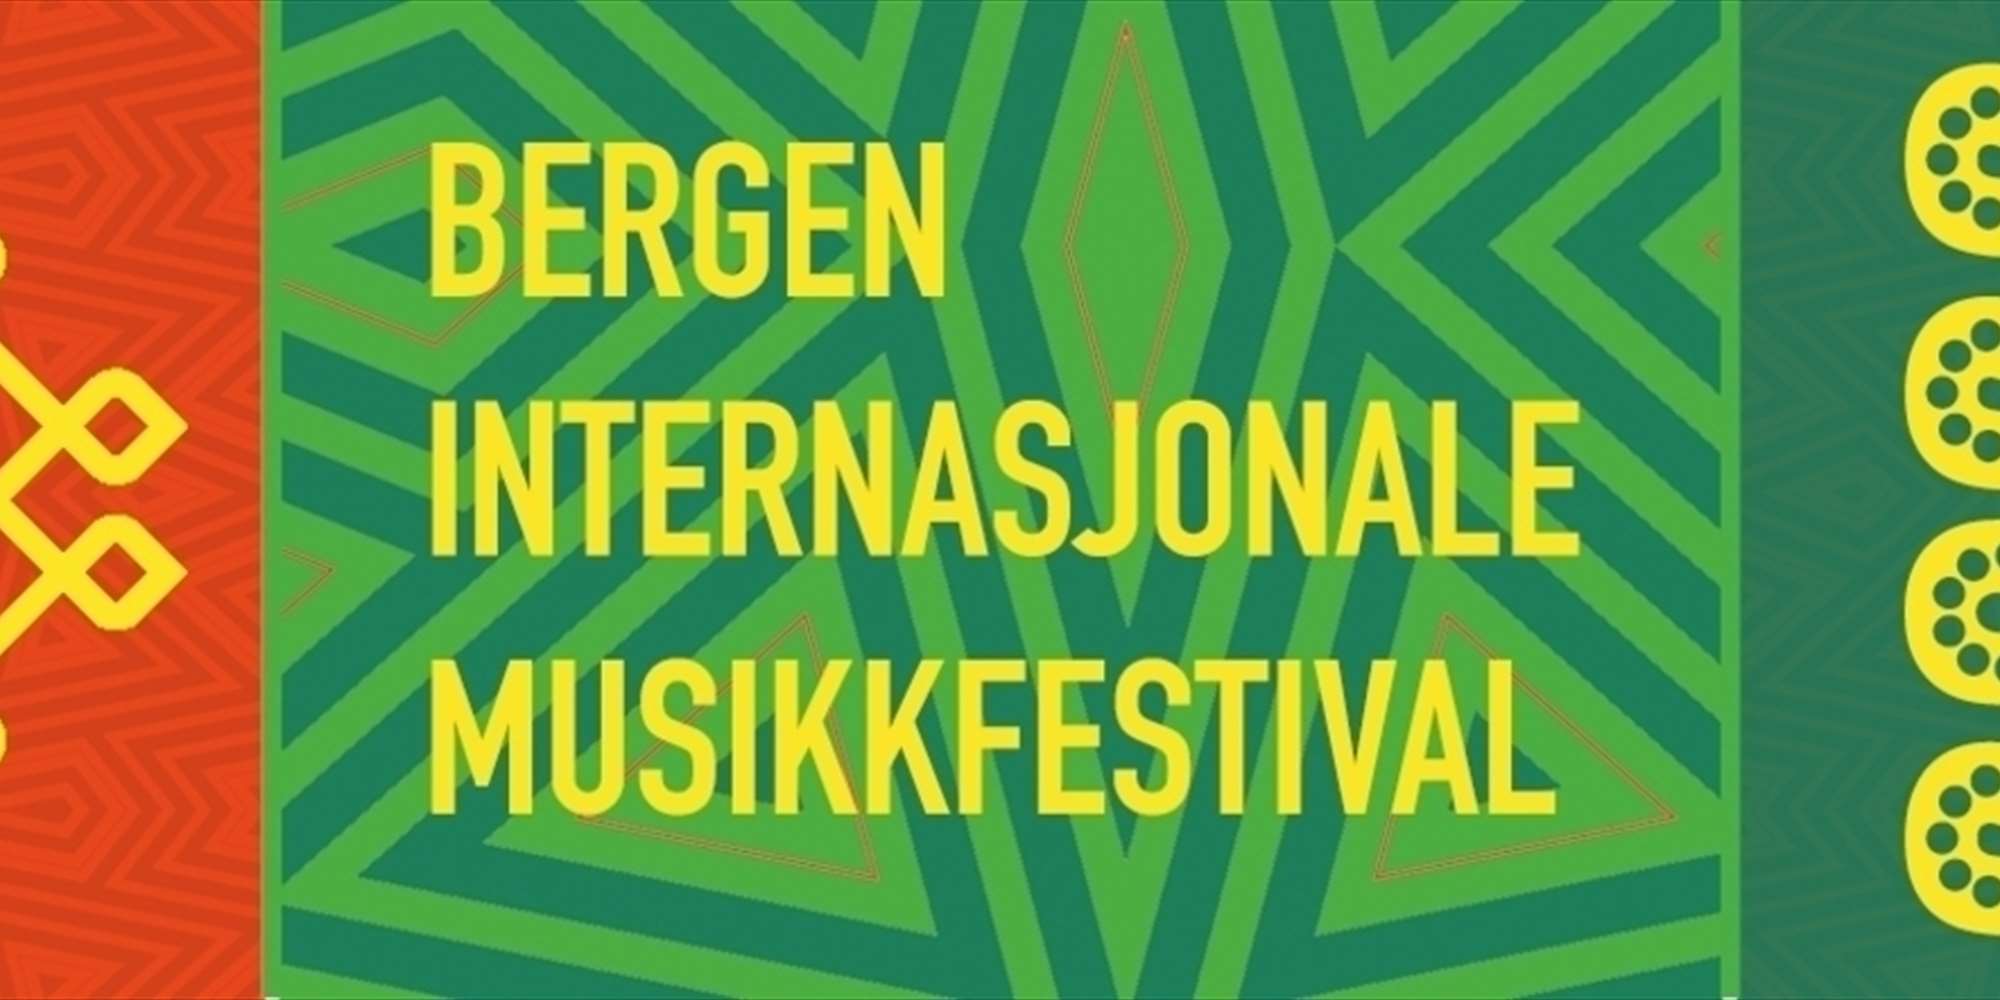 Bergen Internasjonale Musikkfestival